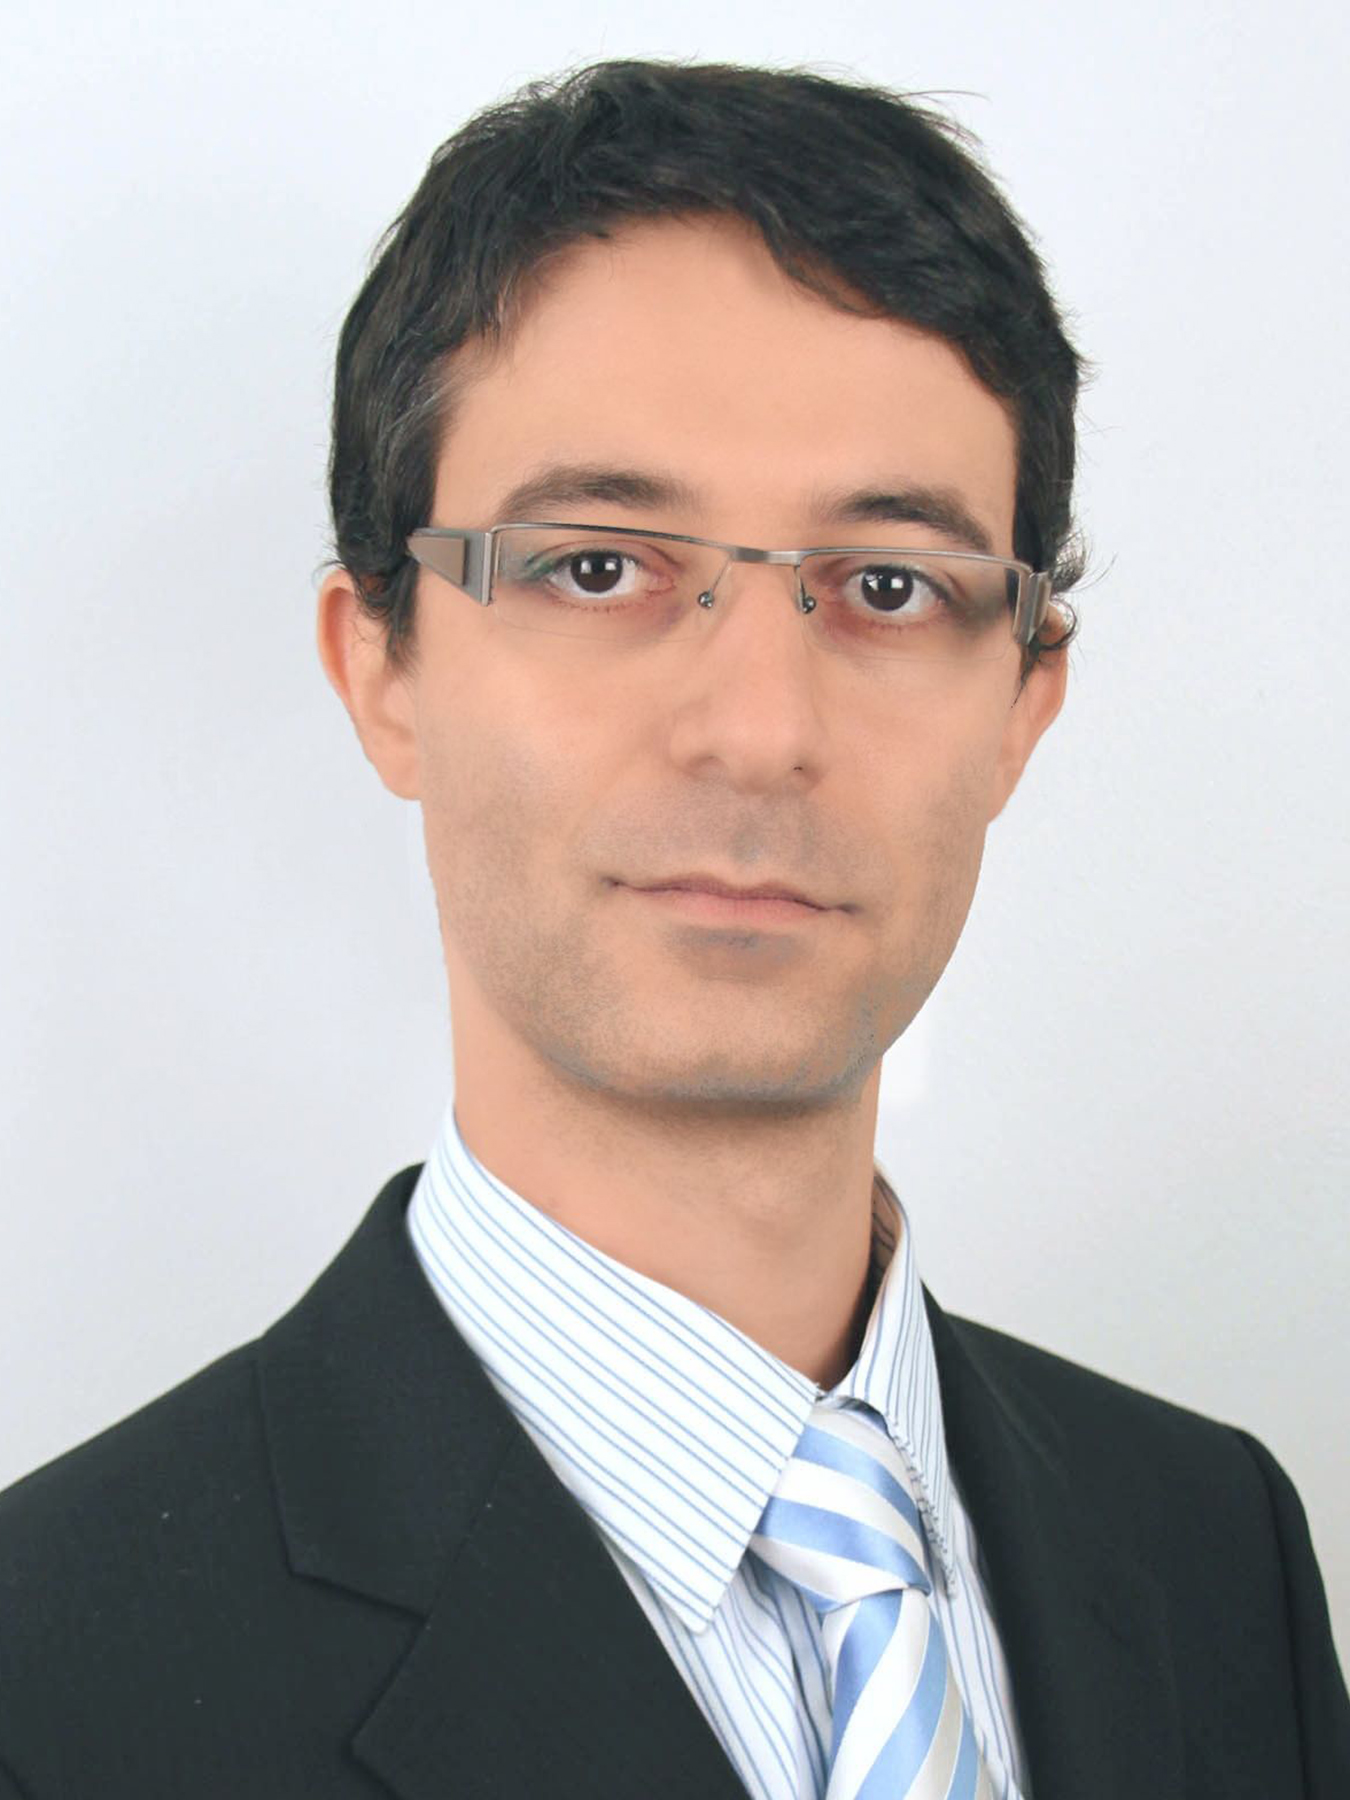 Nikolaos Kakouros, MD, PhD